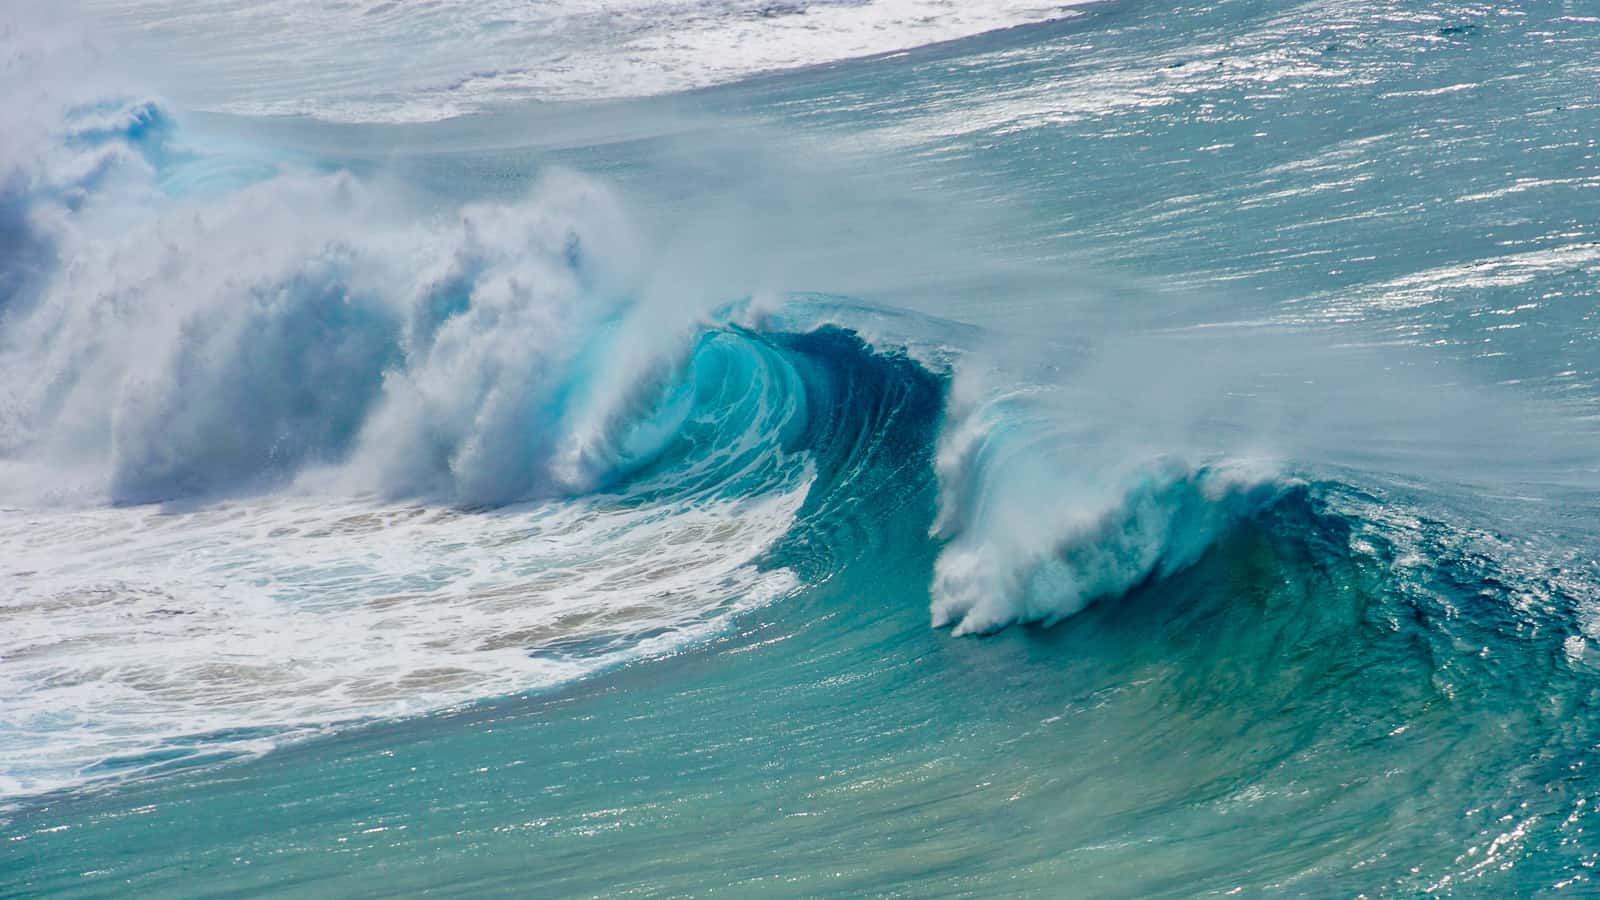 kauai waves - ultimate guide to kauai